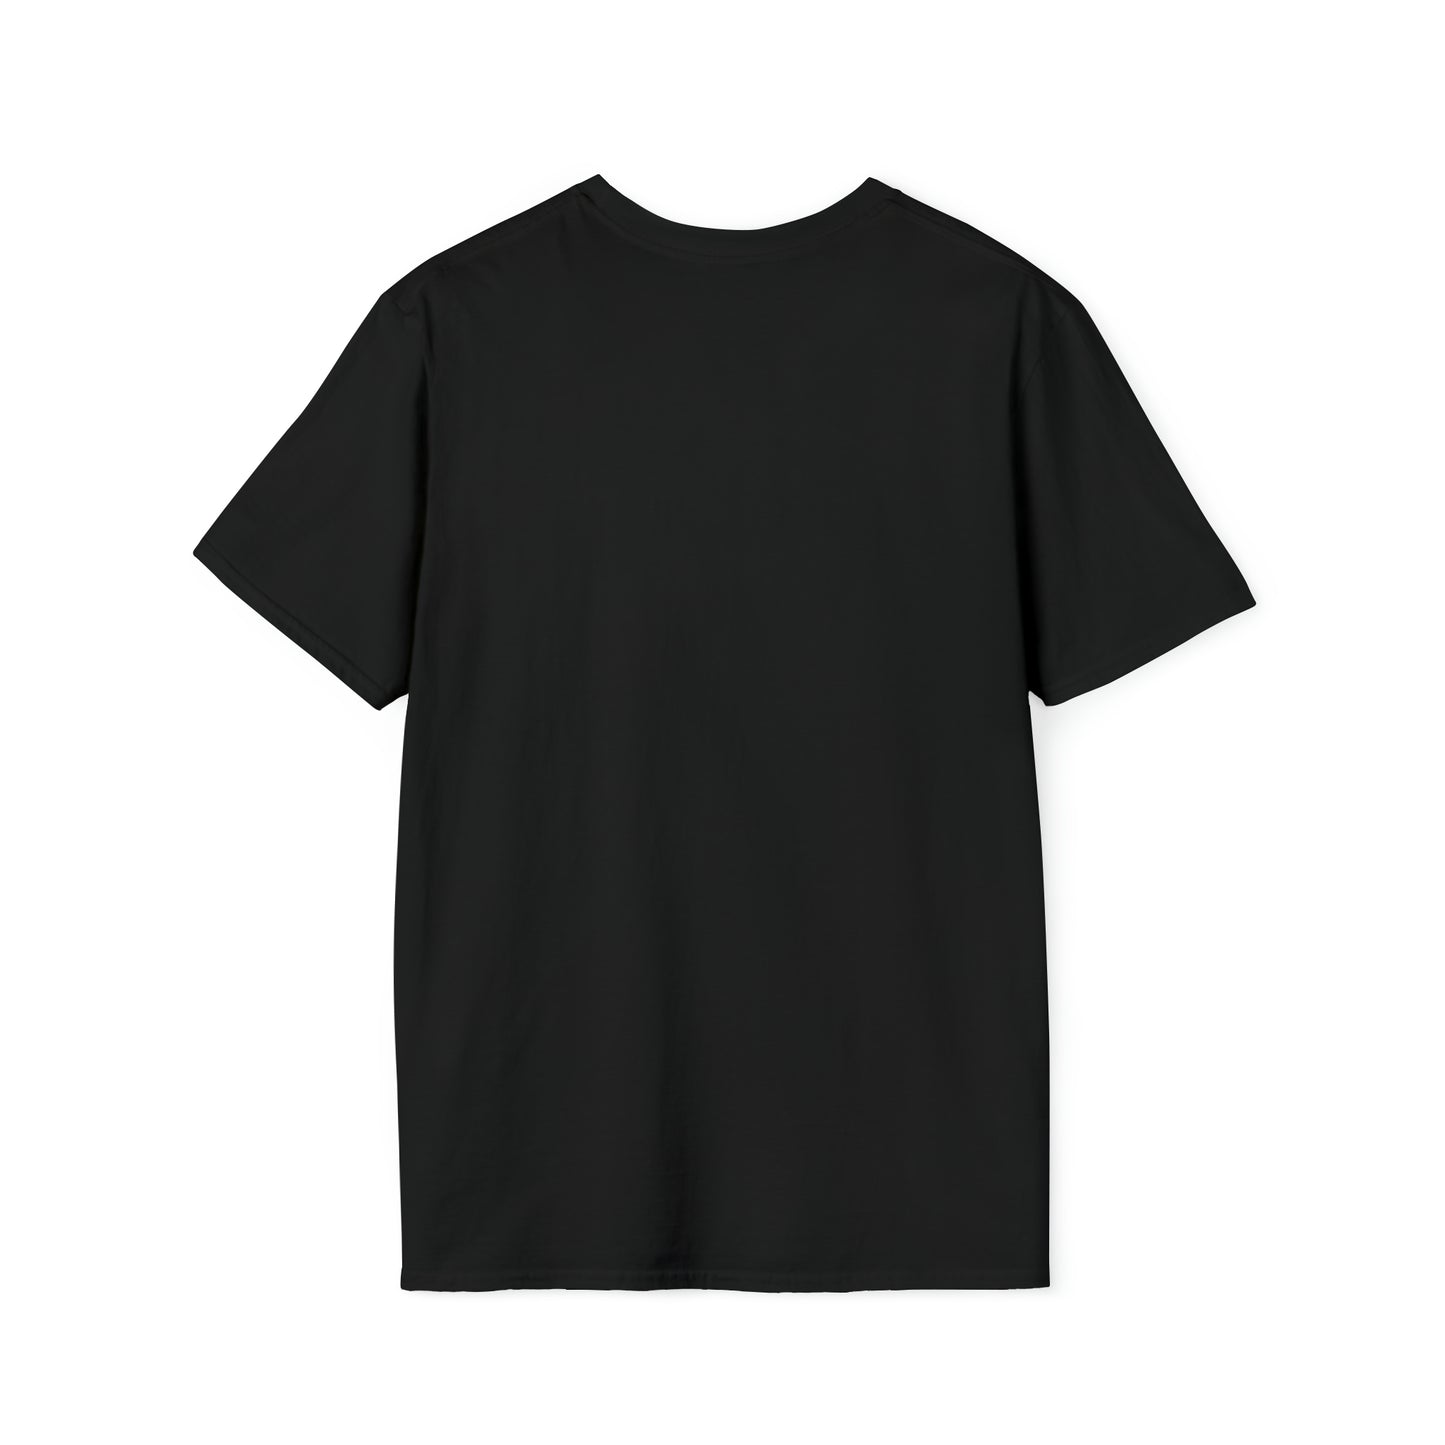 SHINING STAR -  Unisex Softstyle T-Shirt